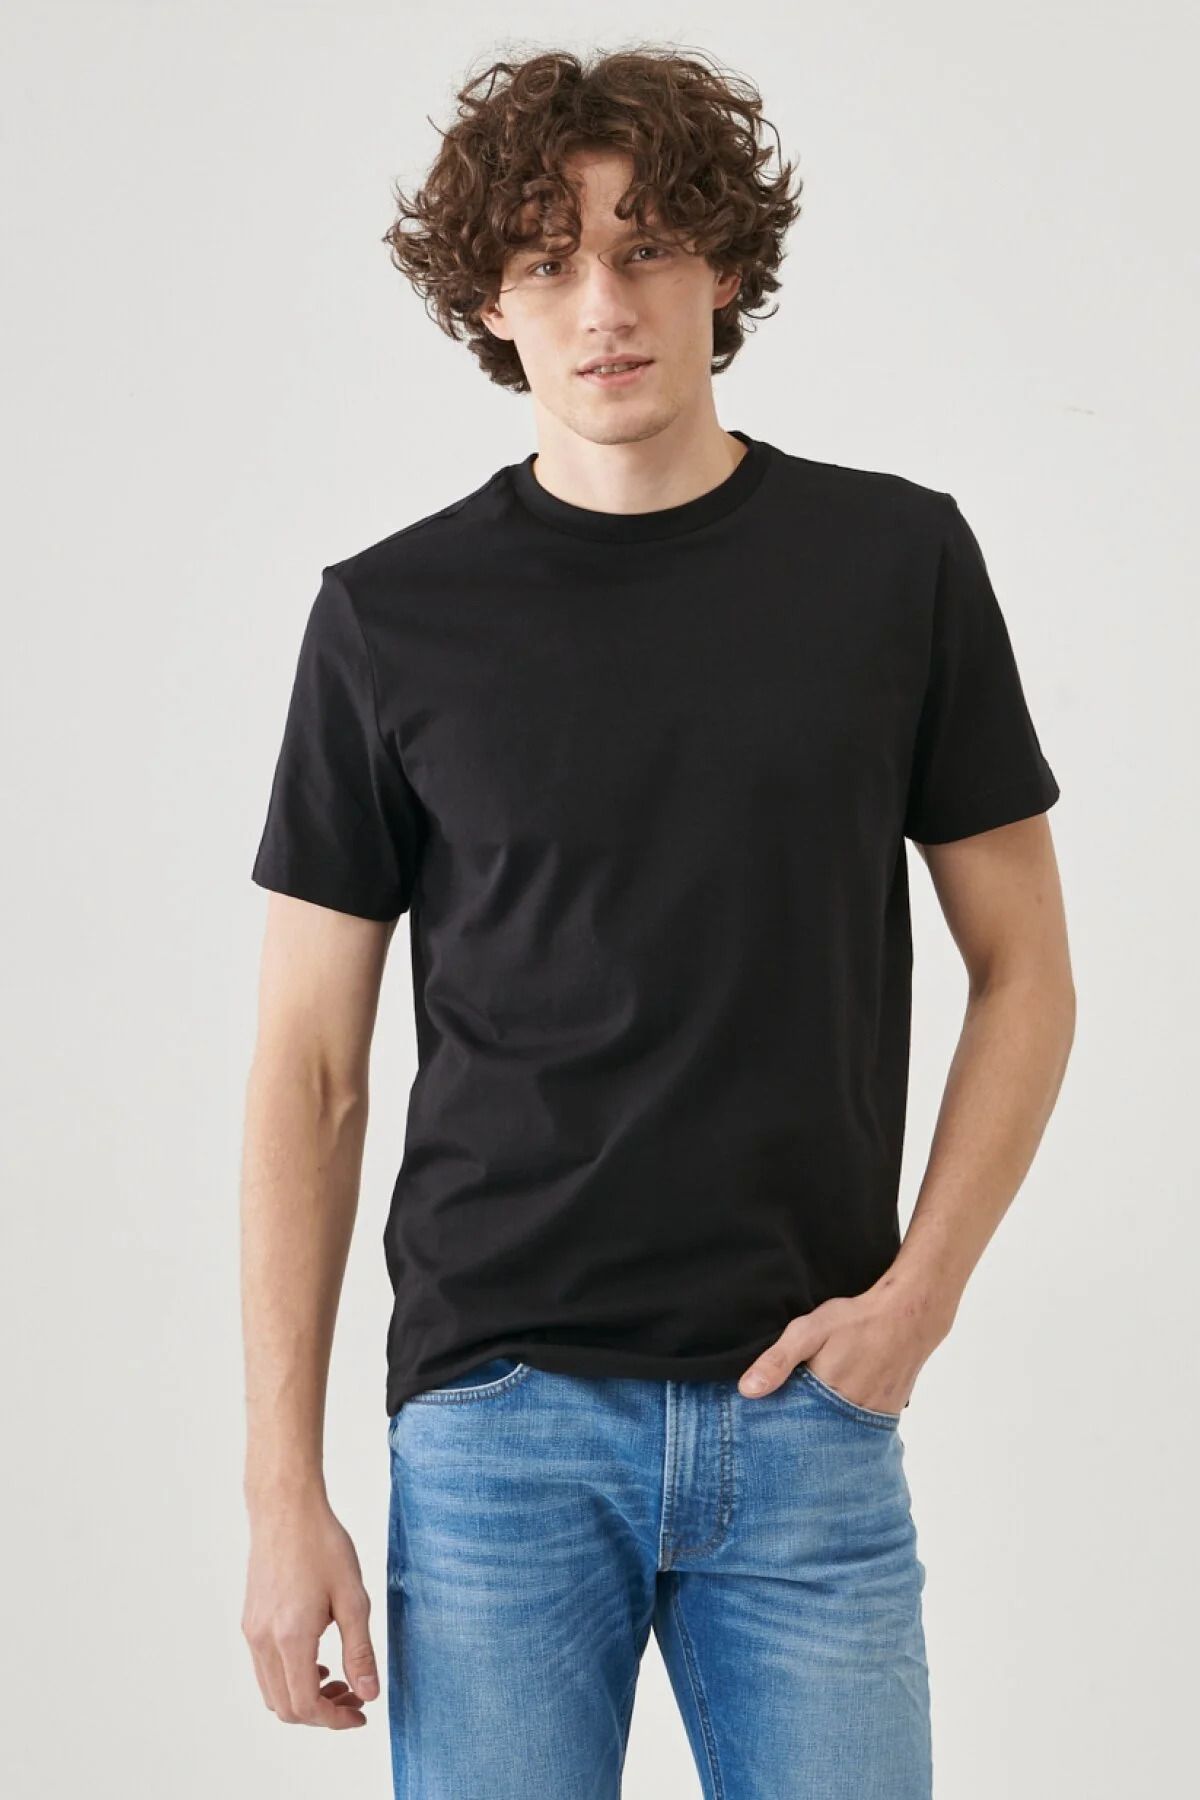 Fit - Fiyatı, Erkek Lee Sıfır T-shirt L221069001 Siyah Yaka %100 Yorumları Regular Pamuk Trendyol